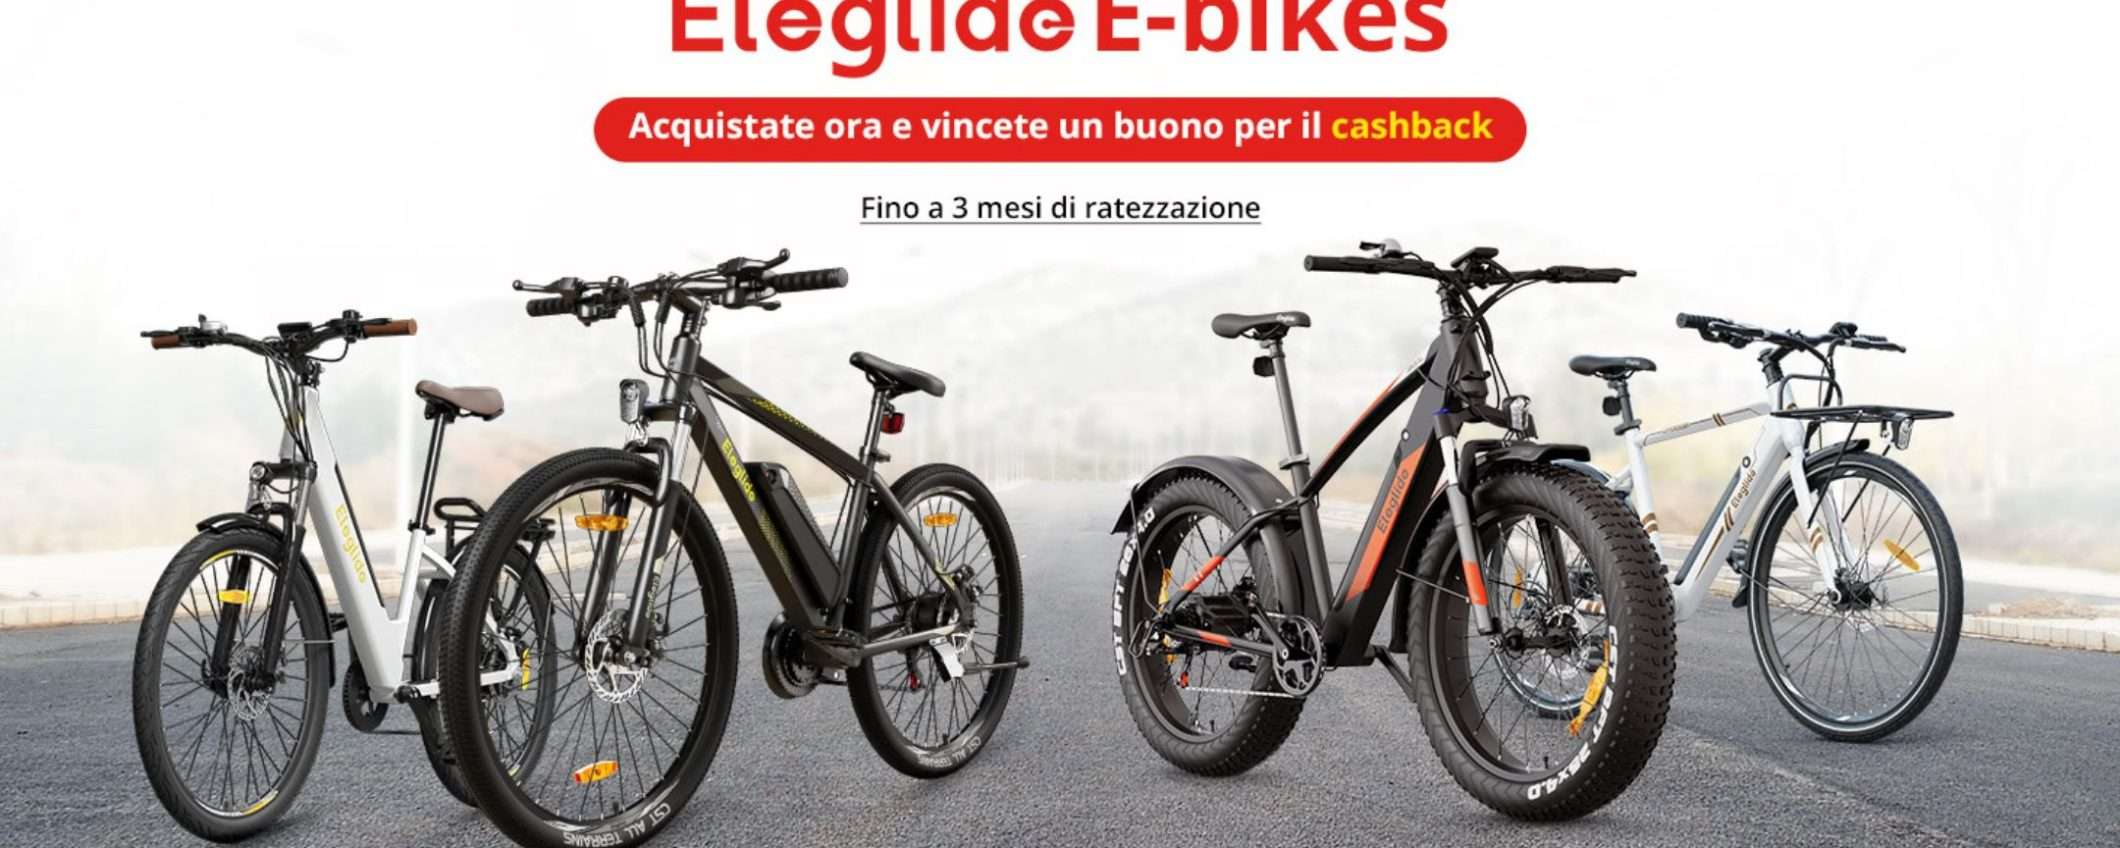 Bici elettrica PREMIUM Eleglide a prezzo WOW e con cashback: promo lampo